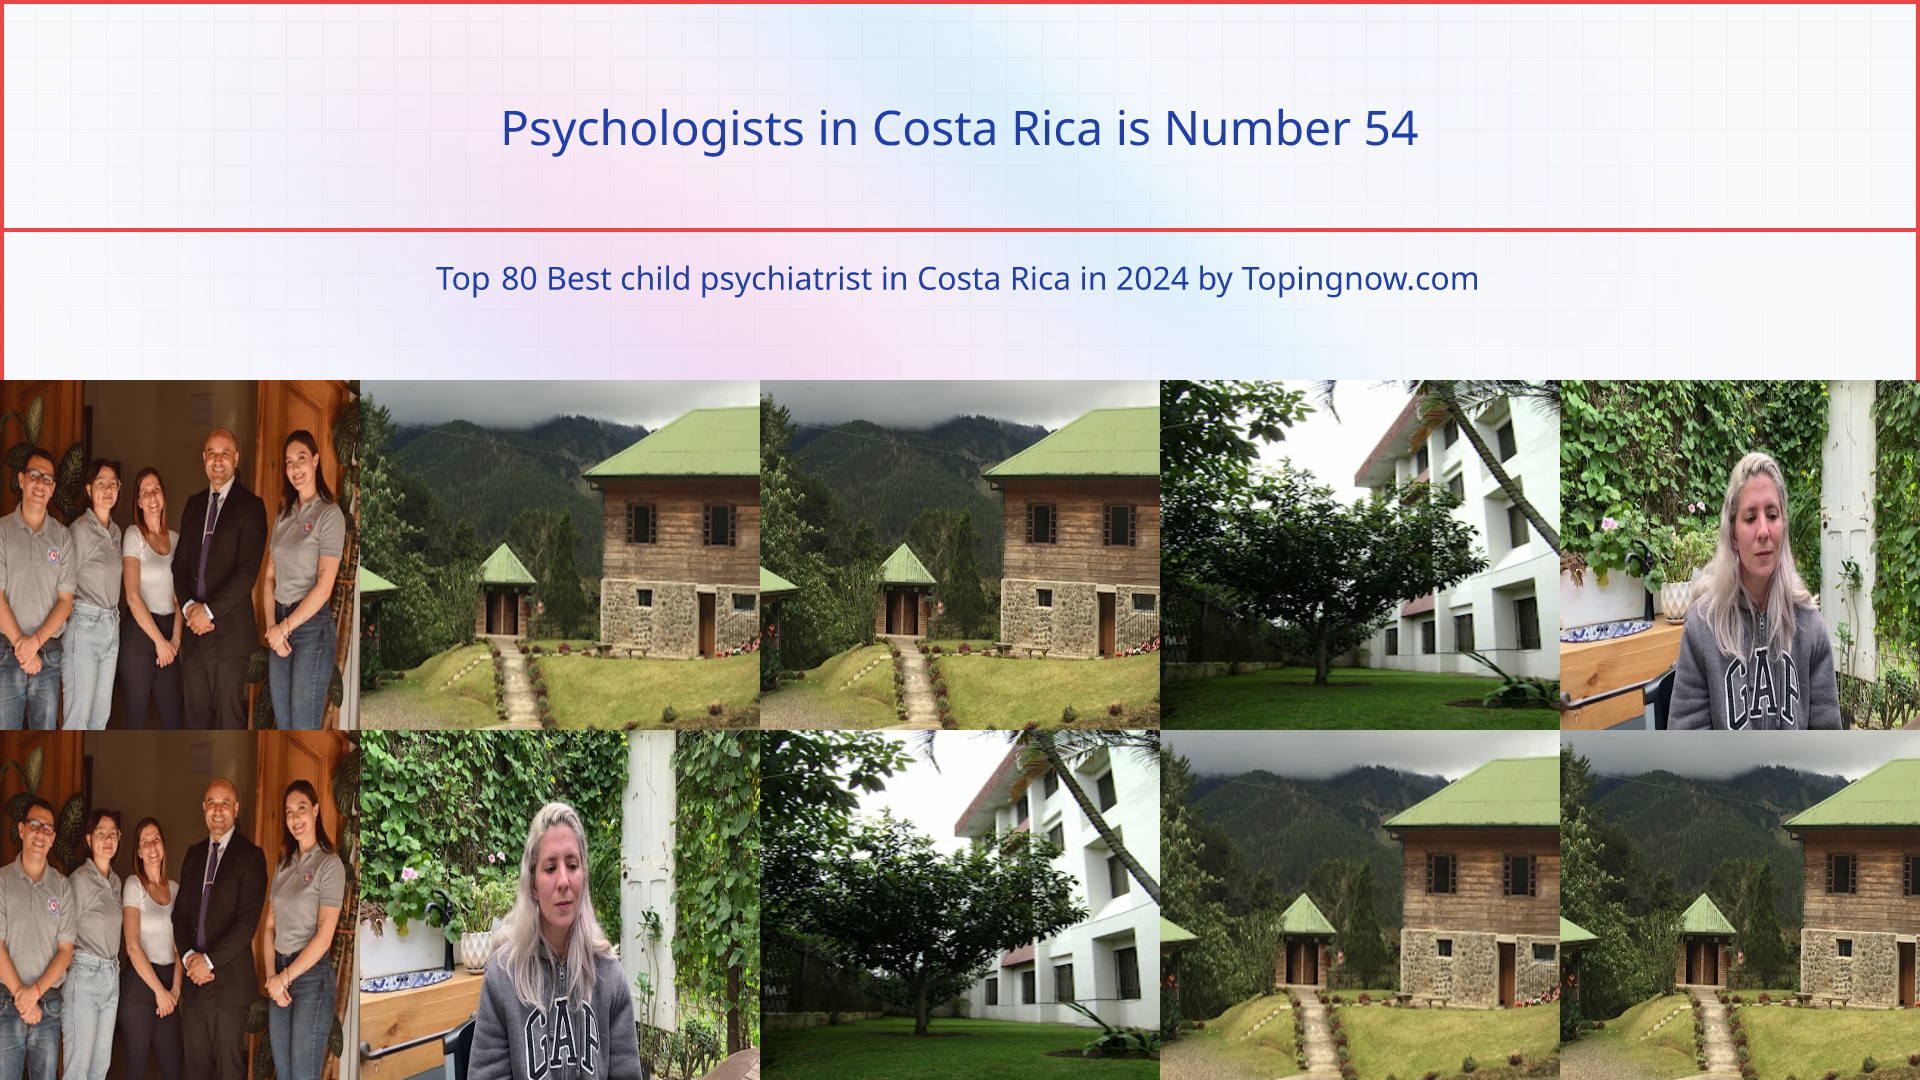 Psychologists in Costa Rica: Top 80 Best child psychiatrist in Costa Rica in 2024